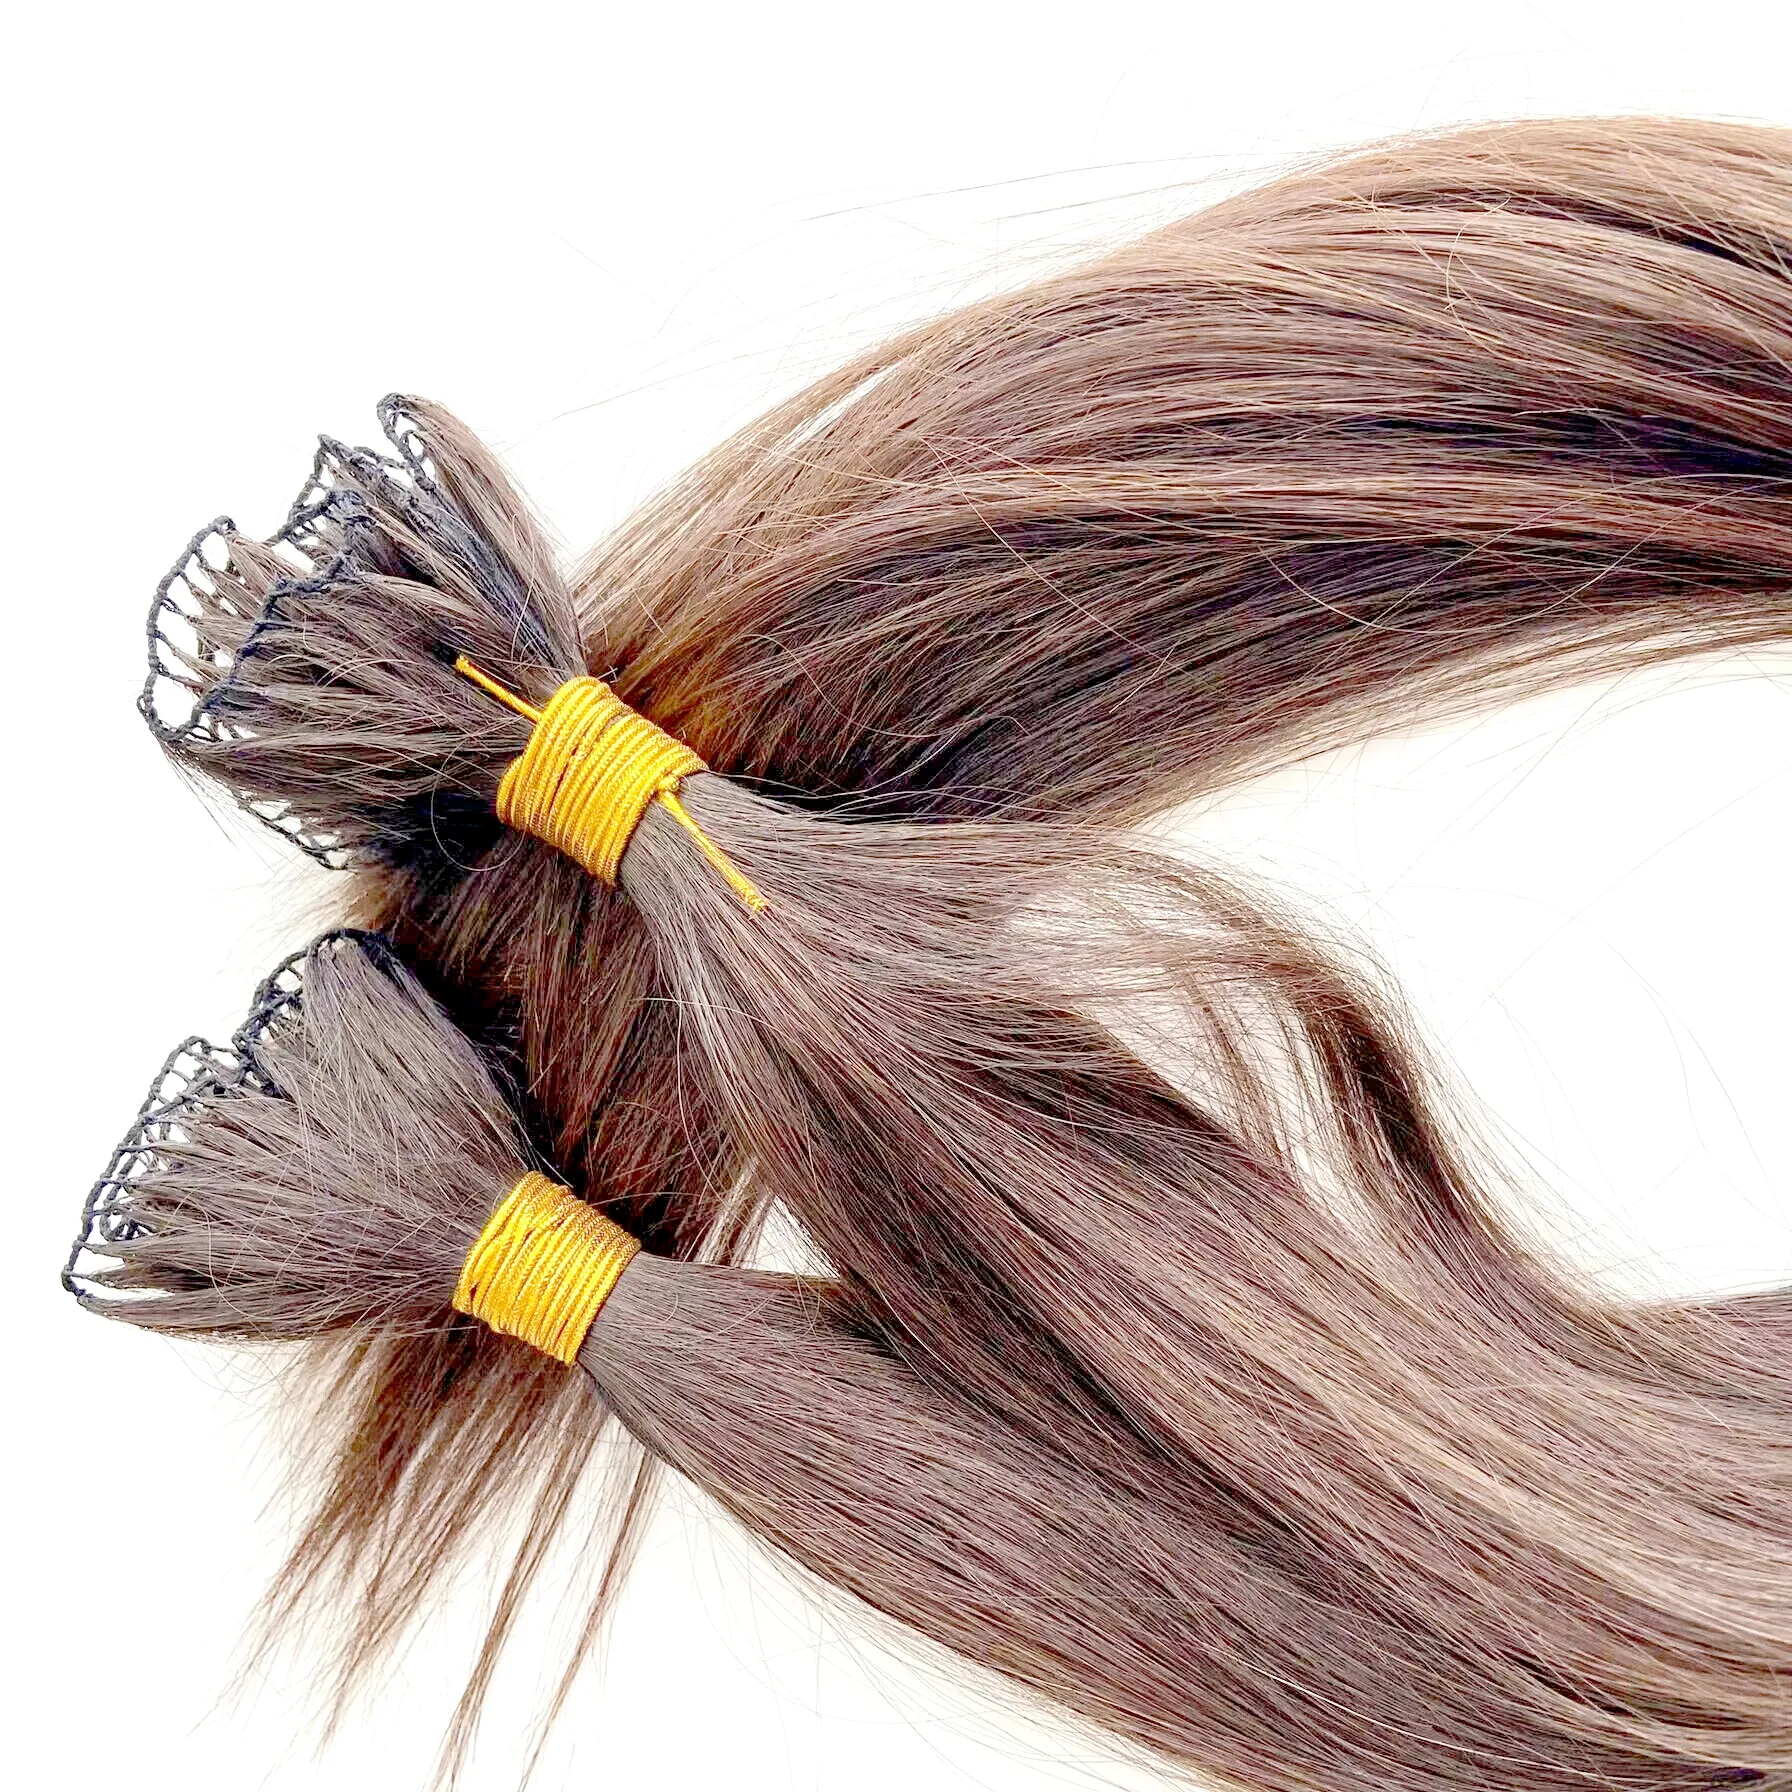 תוספות שיער זעירות בלתי נראות מצוירות כפולות סוג שזיף תוספות שיער אדם קשורות עבור קוריאני יפני אירופאי אמריקאי